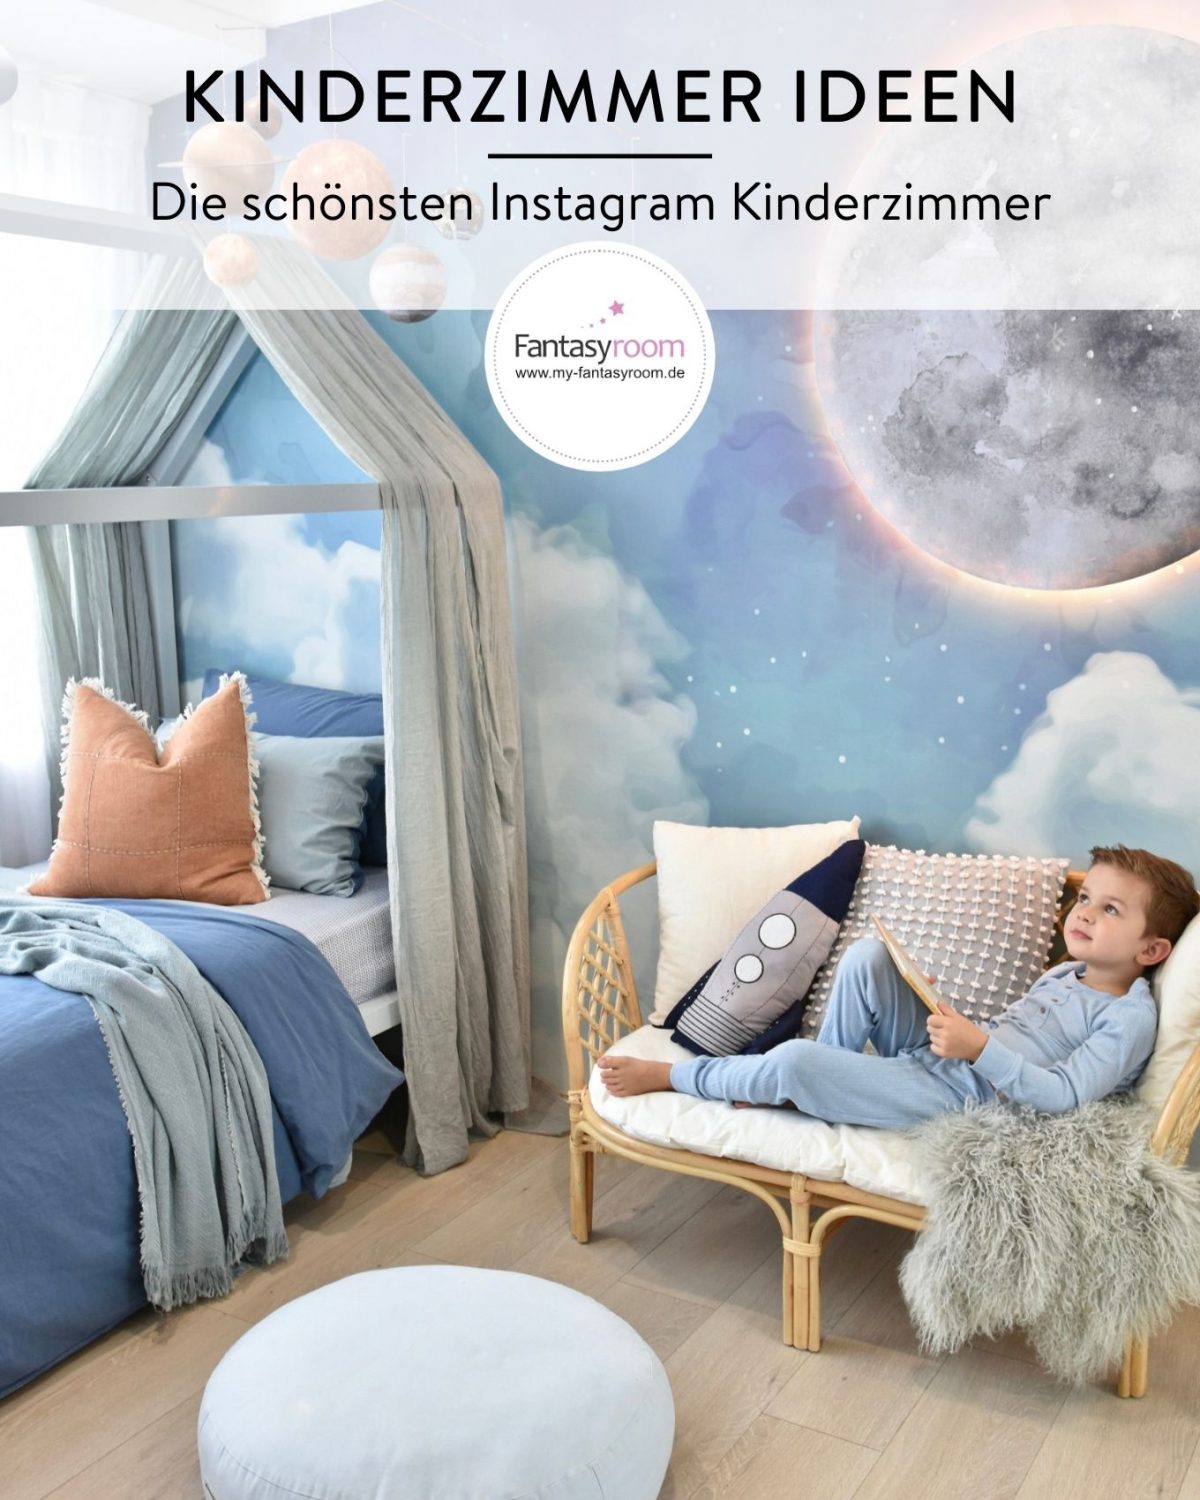 Die schönsten Kinderzimmer Ideen bei Instagram im Fantasyroom Blog